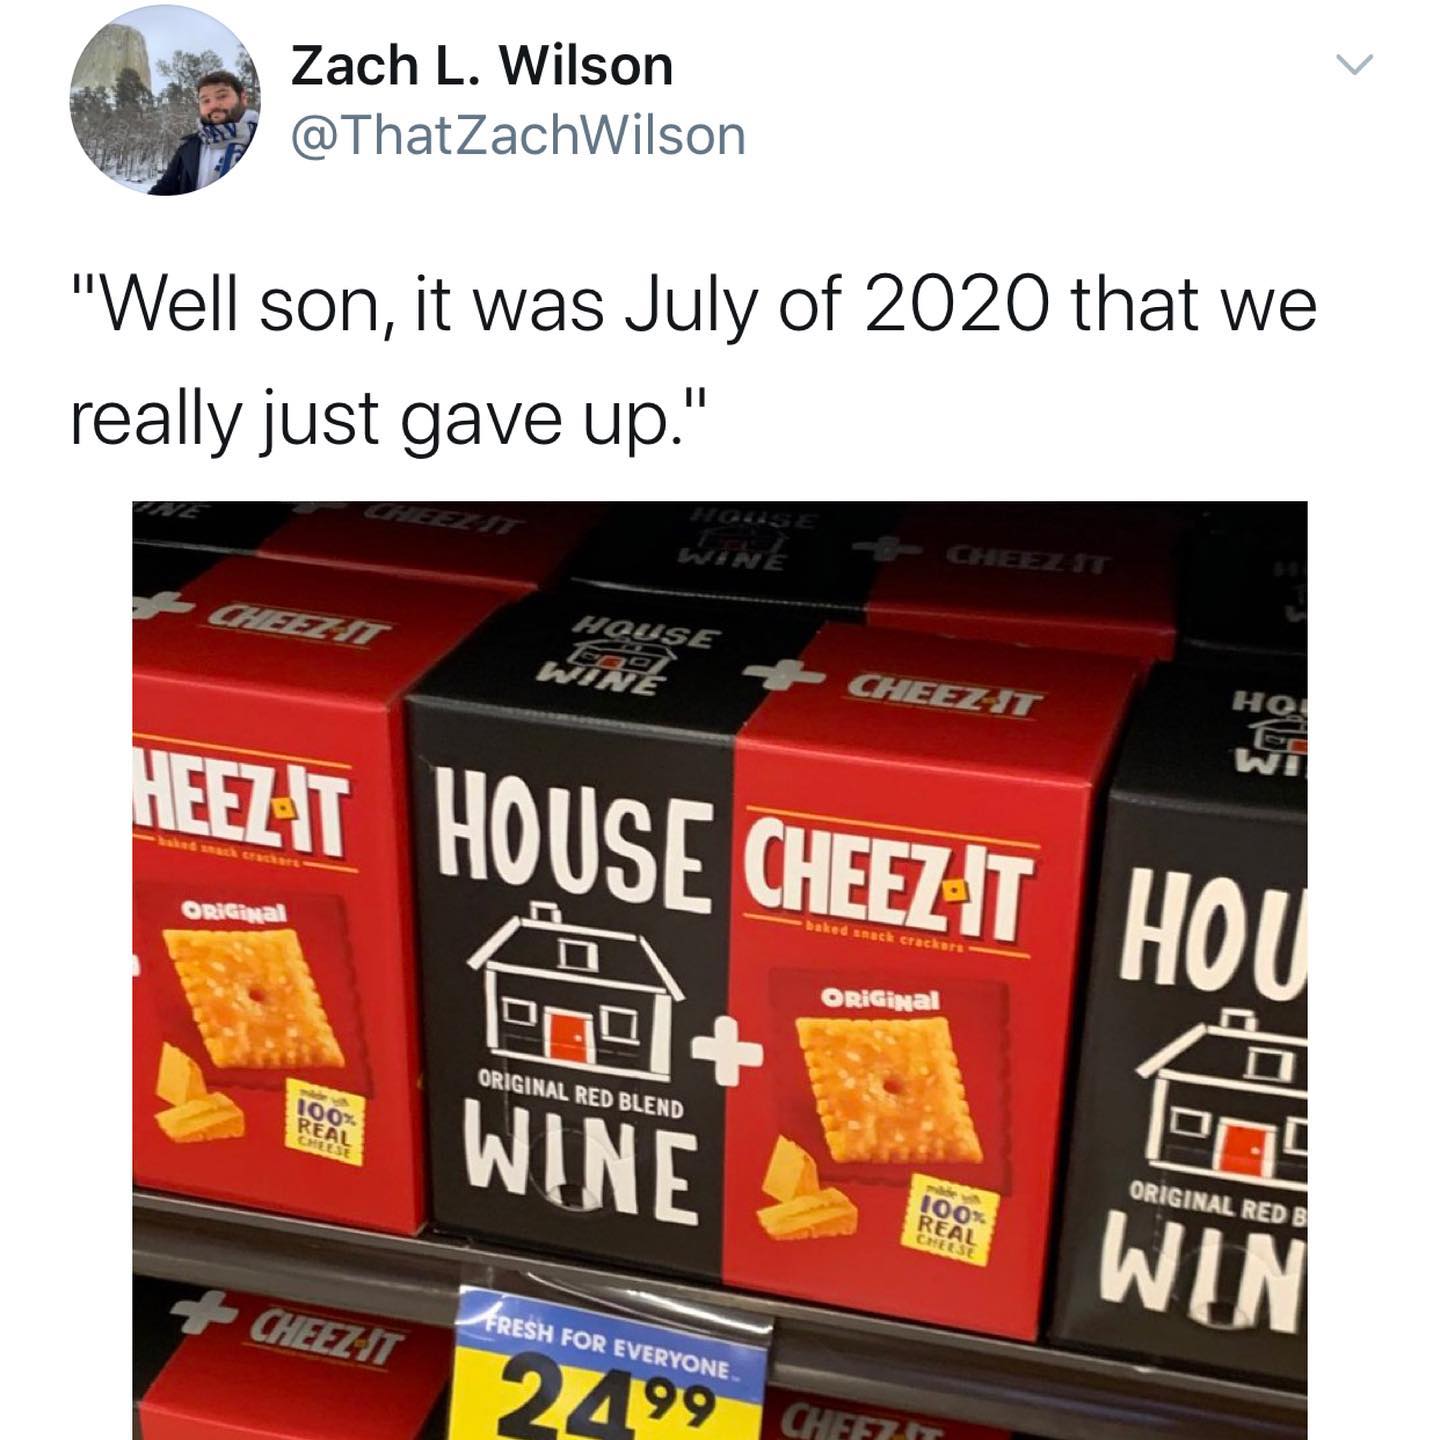 dank memes - twitter - well son it was july 2020 - Zach L. Wilson